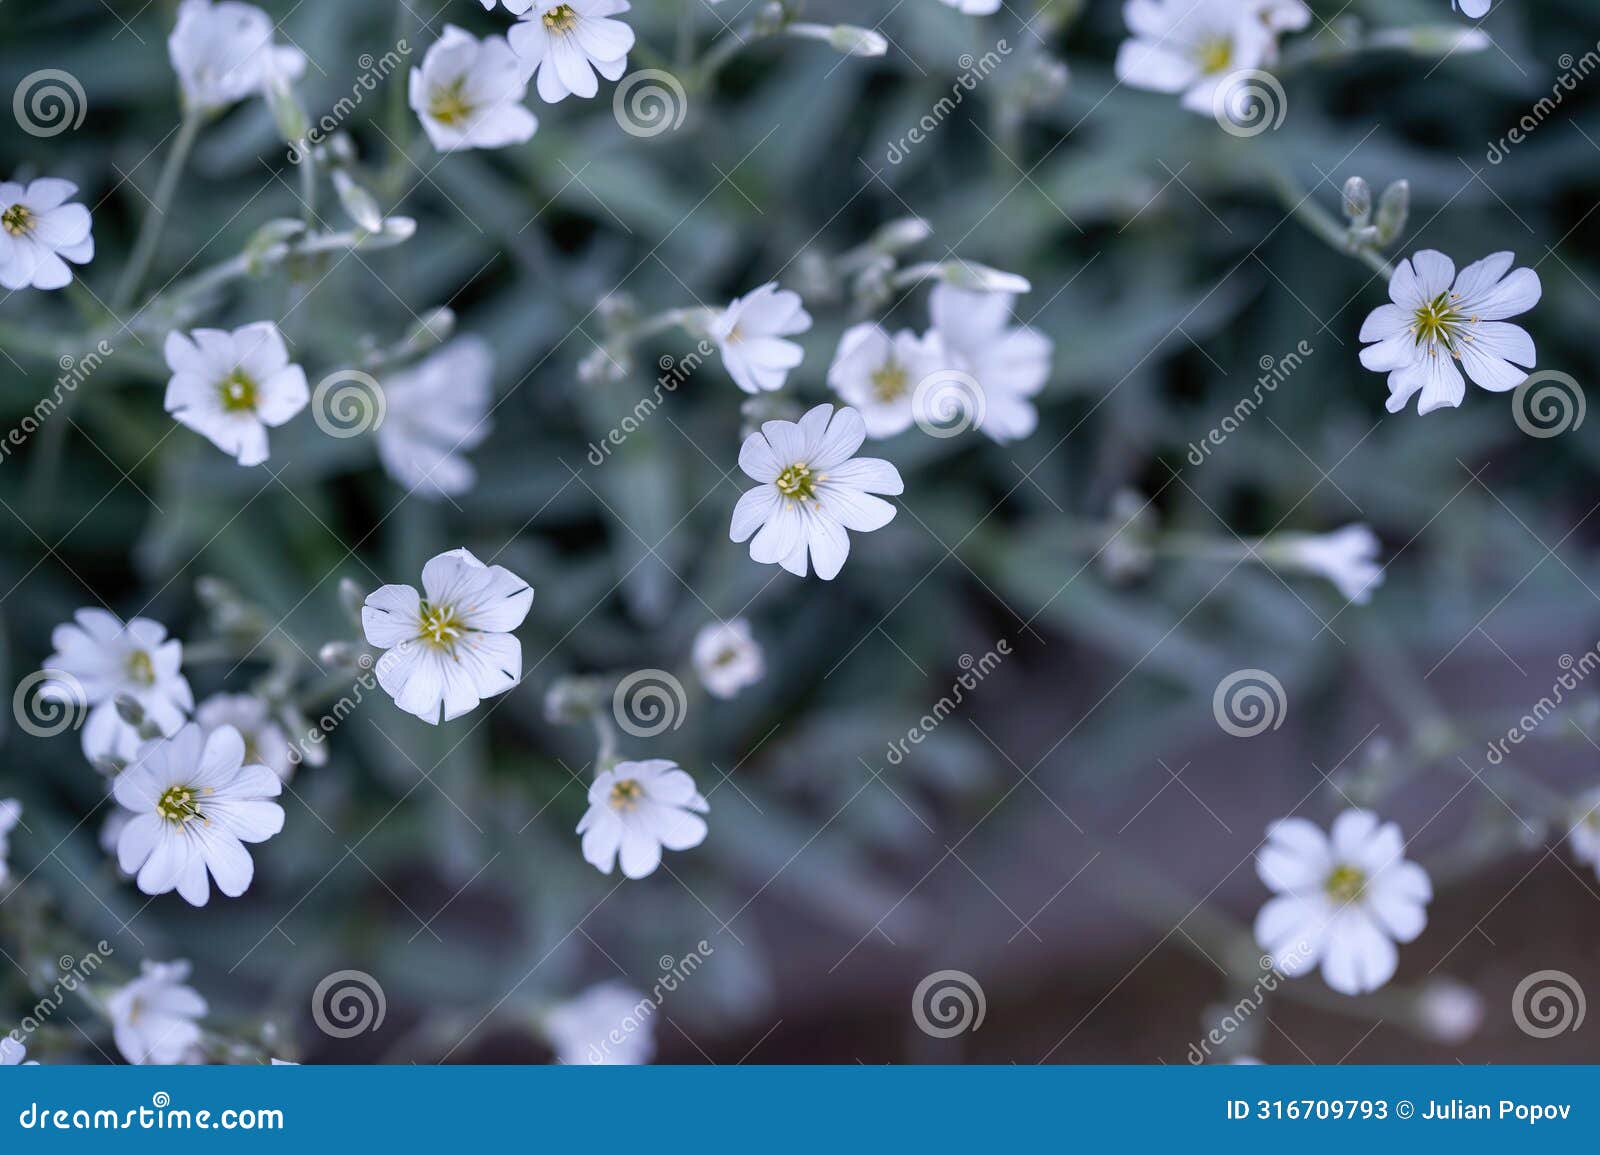 macro shot of boreal chickweed flowers cerastium biebersteini